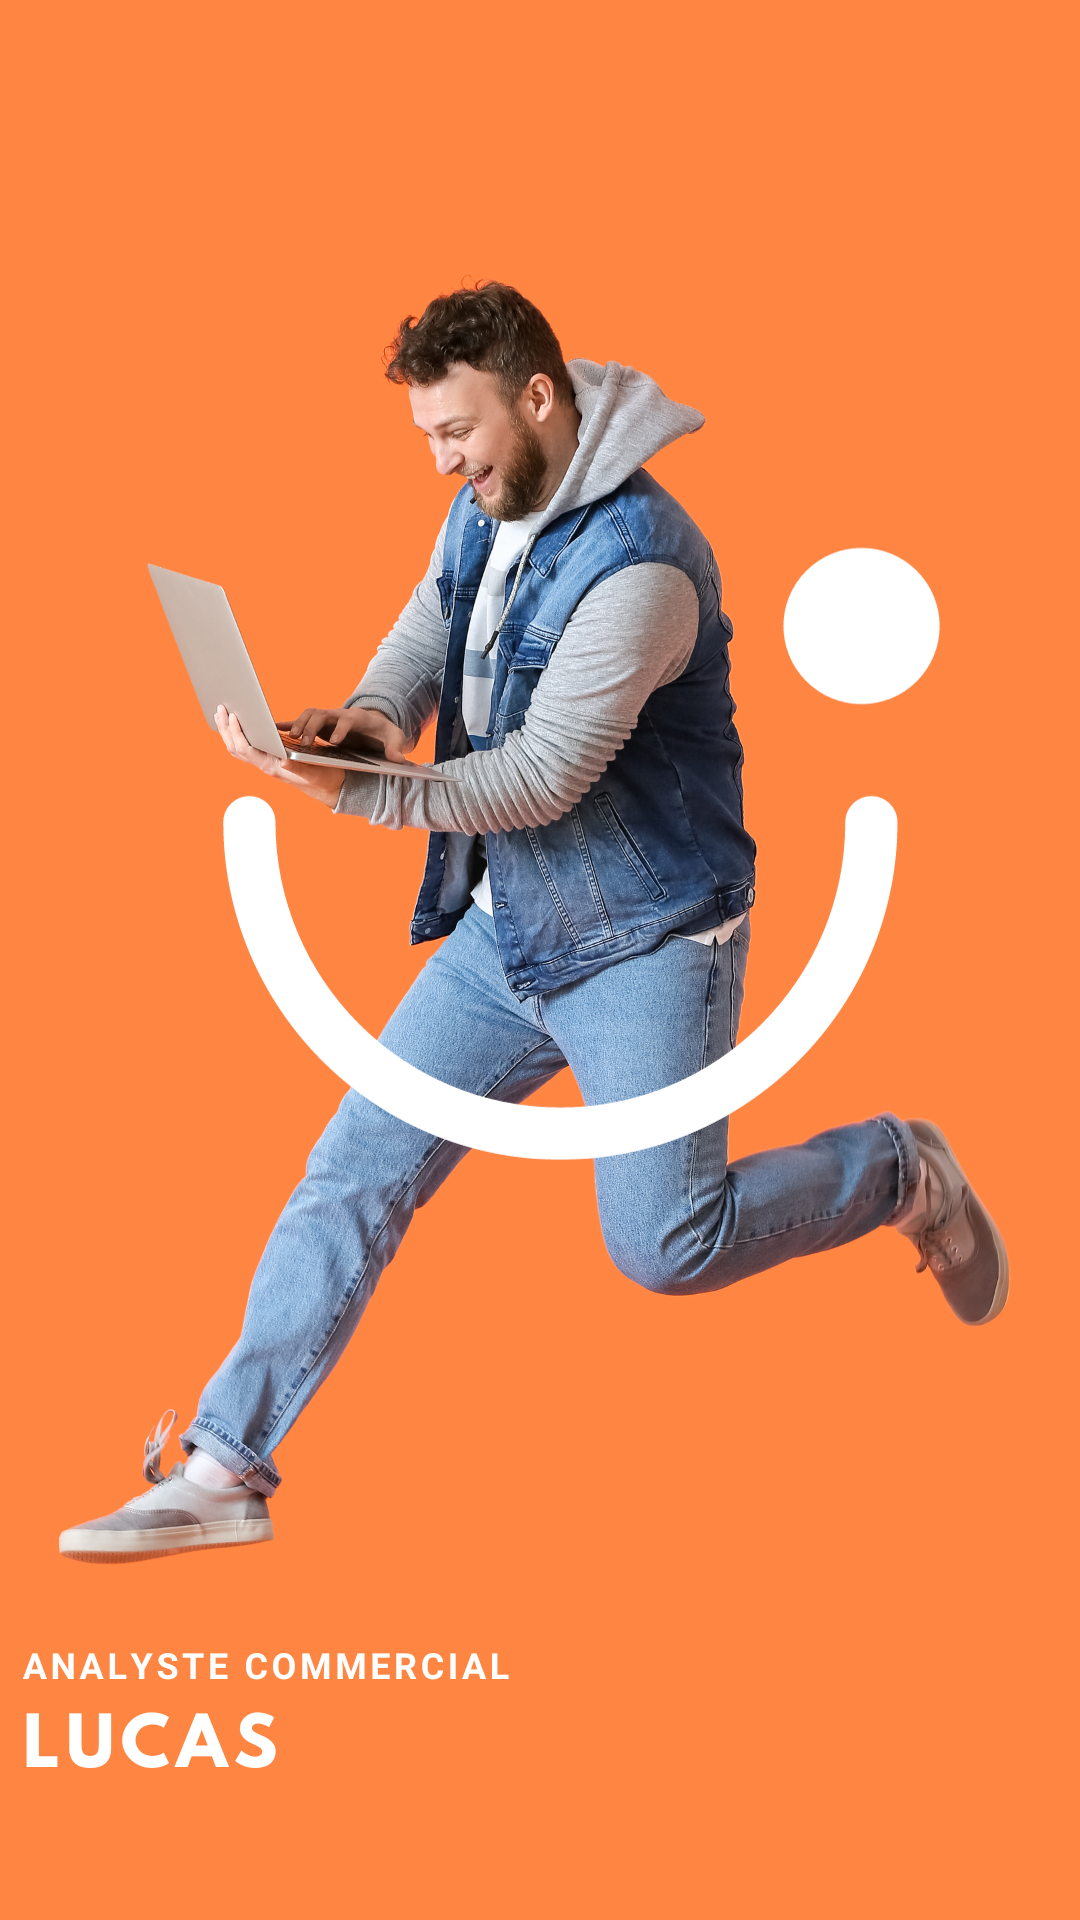 Présentation de l'équipe NekoTea  Un alt tag pour cette photo pourrait être : "Analyste commercial Lucas en tenue décontractée avec un gilet et une veste en jean, utilisant un ordinateur portable tout en sautant joyeusement sur un fond orange avec un sourire graphique dessiné en arrière-plan.